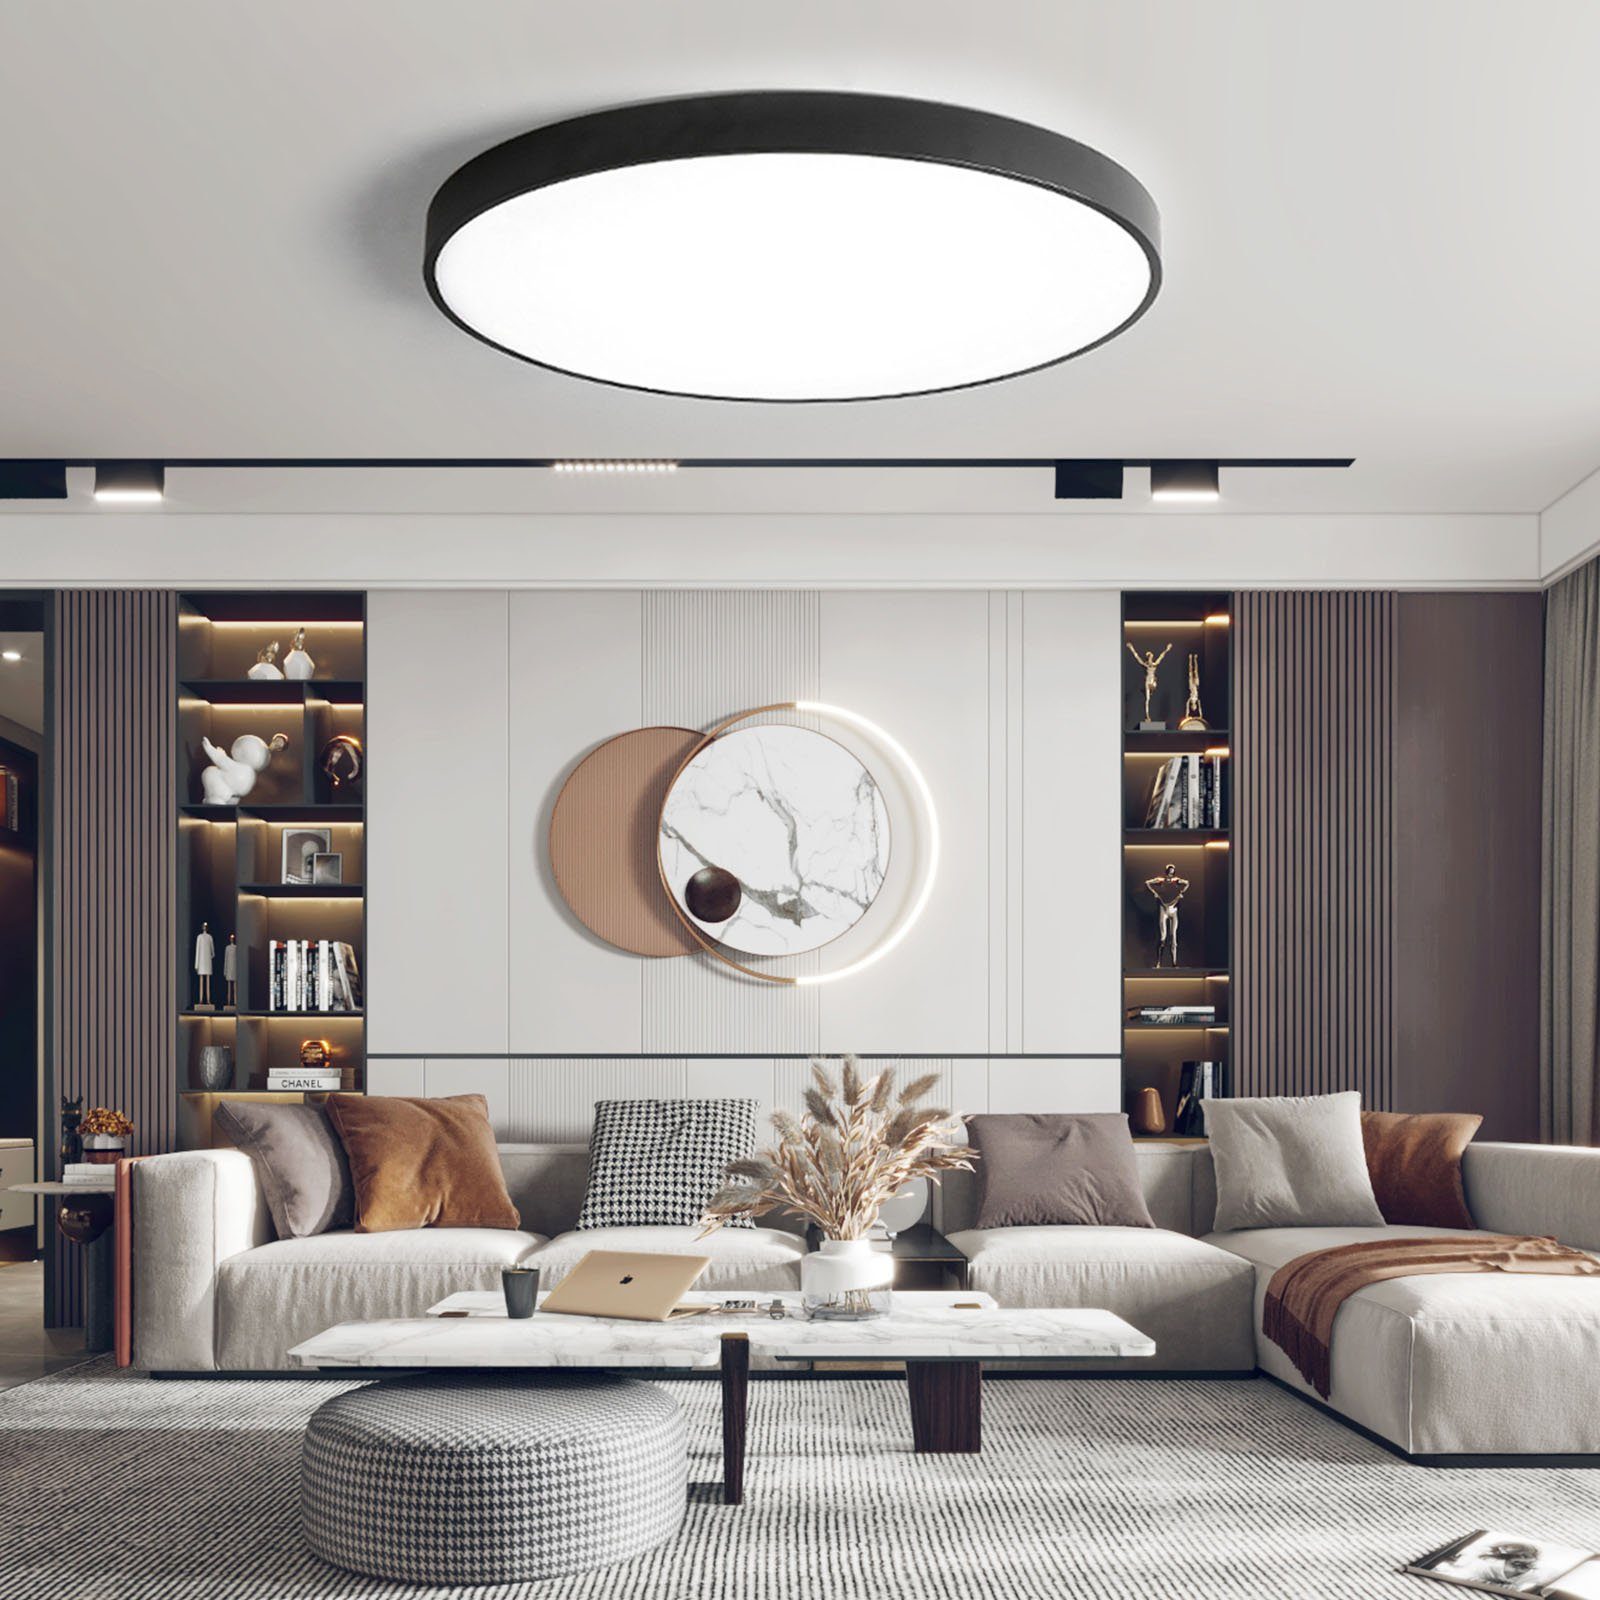 integriert, Büro Schlafzimmer Diele Wohnzimmer Küche Warmweiß LED style (Schwarz) für Deckenlampe Metall, fest Ø40*4cm home 3000K, aus Deckenleuchte 36W, LED